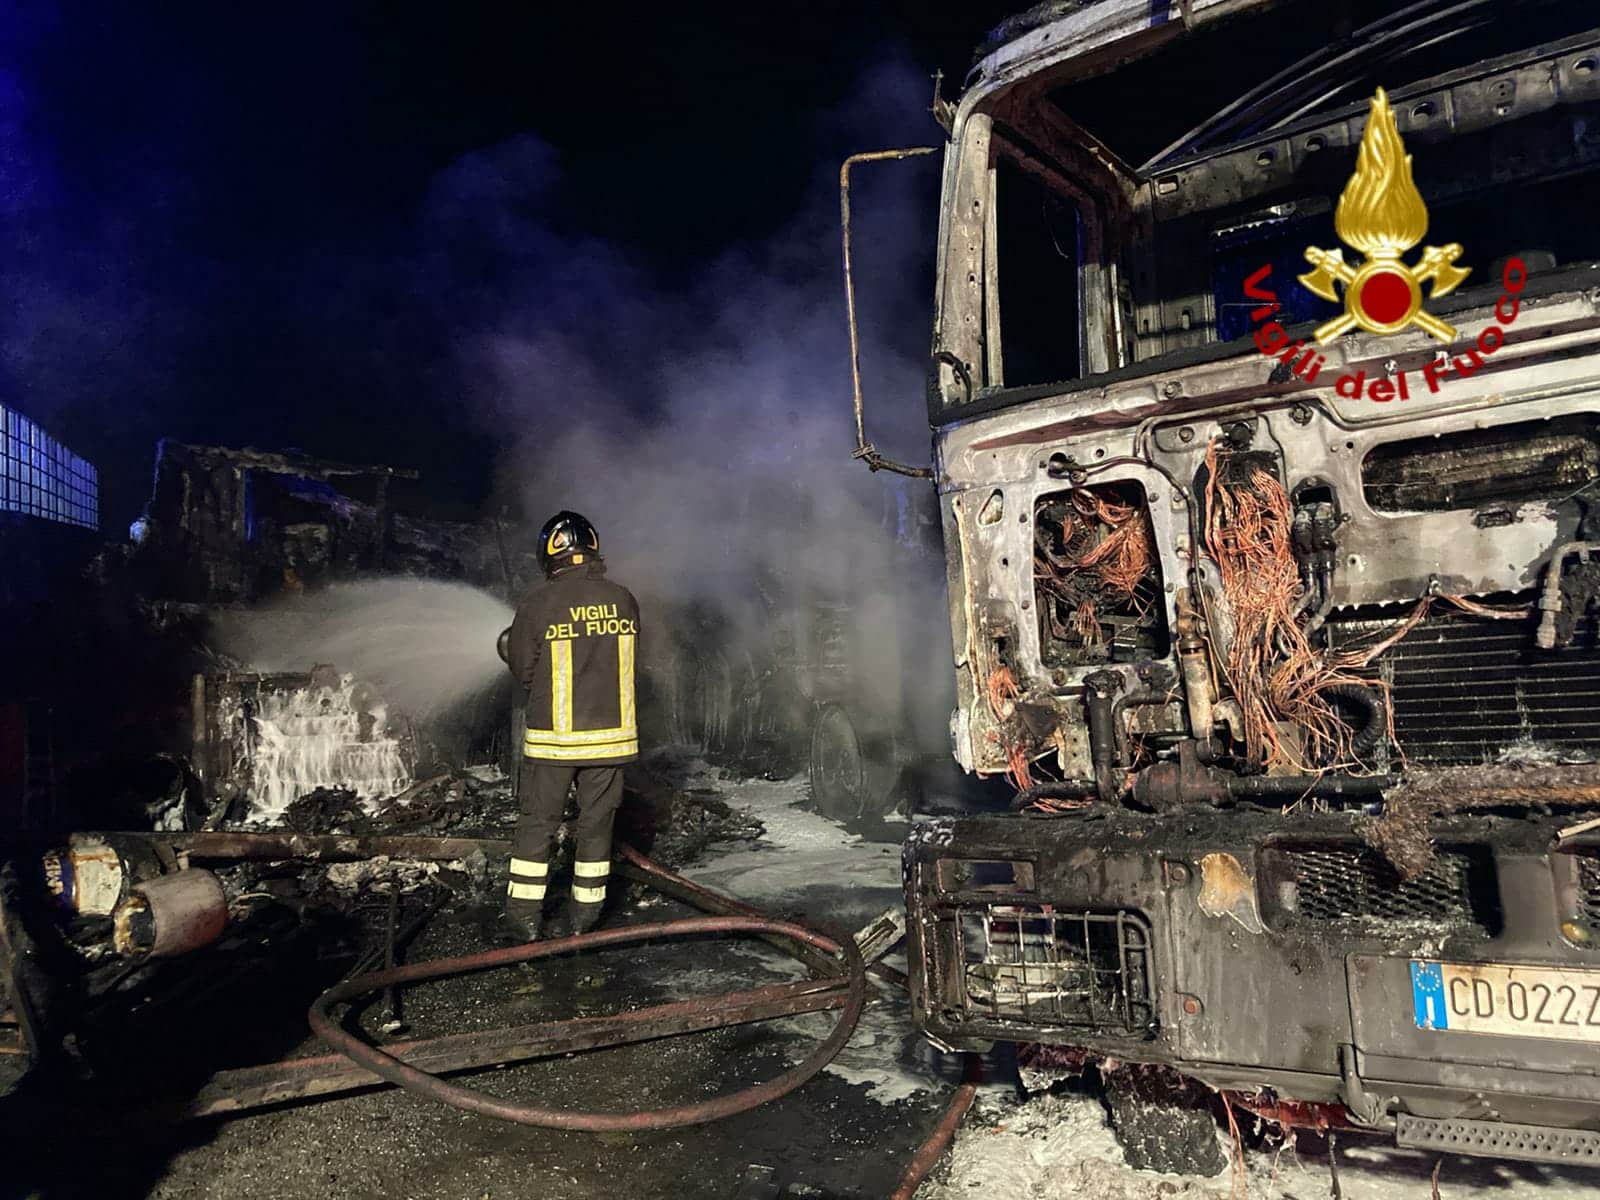 Paura a Catania, divampa incendio nella zona sud: distrutte diverse attrezzature e mezzi